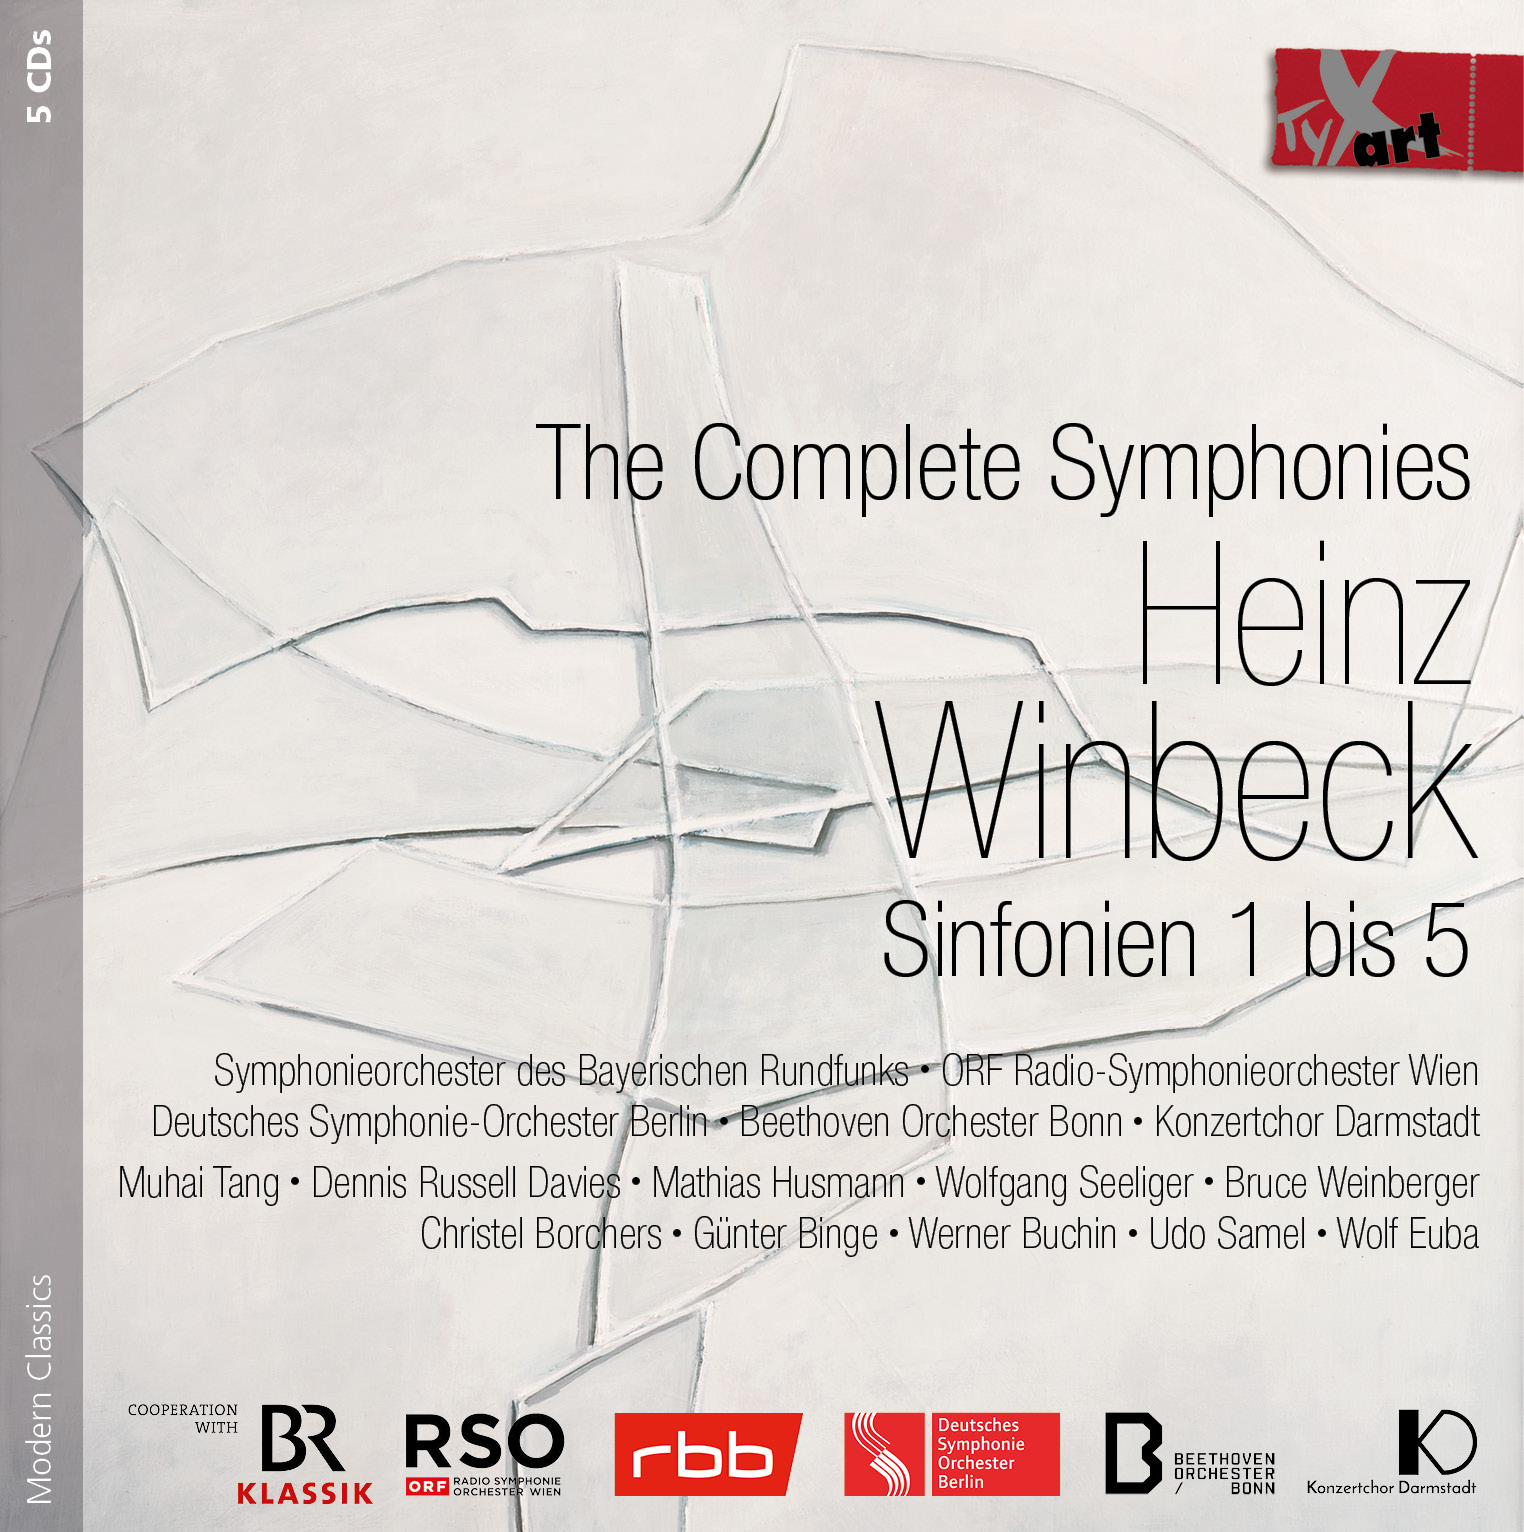 Heinz Winbeck - Sämtliche Sinfonien (1-5)